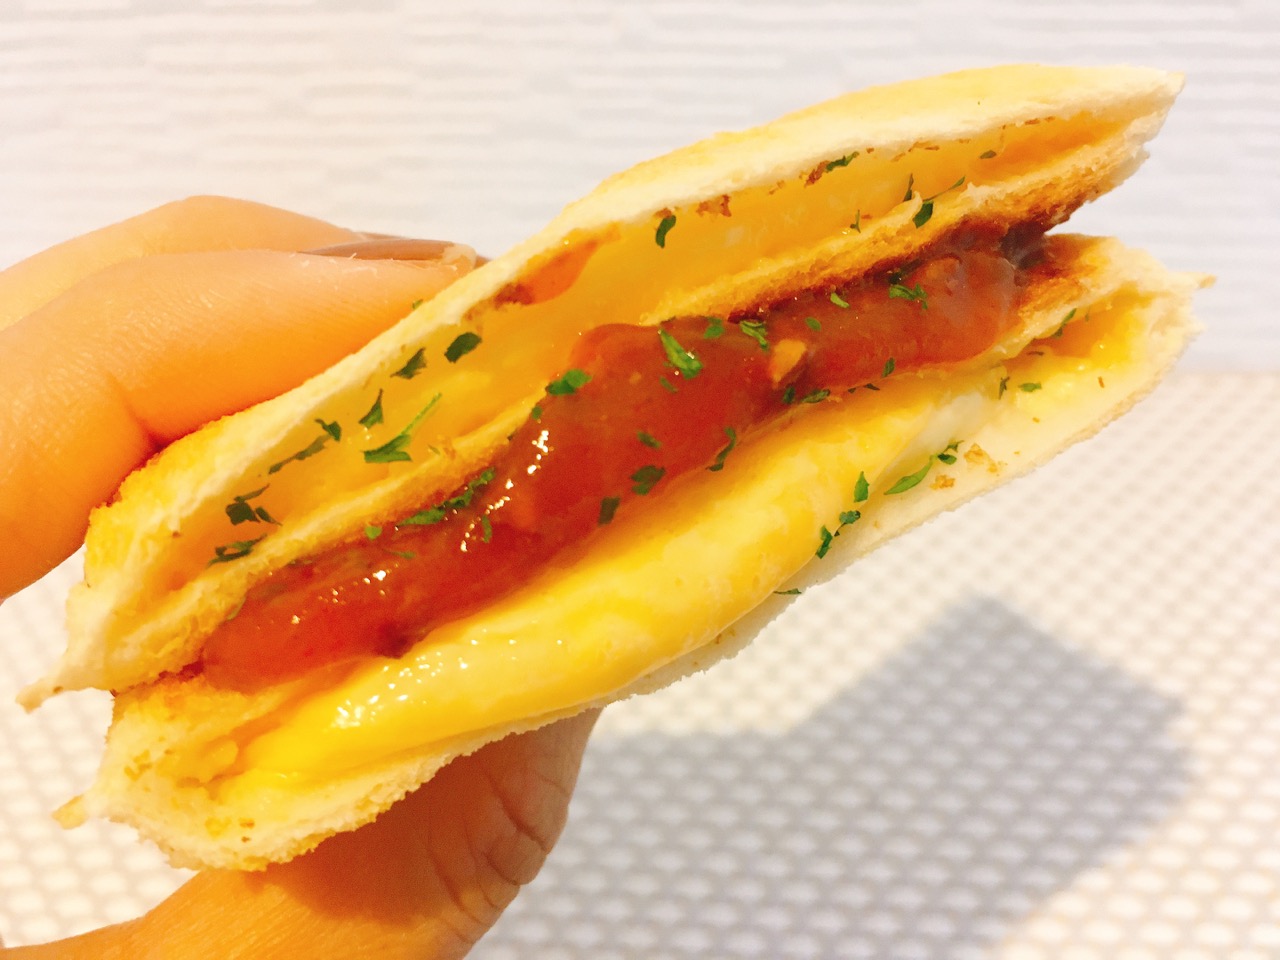 新作ランチパック「チーズ!!!」に市販のミートソースを挟んだら…カフェ飯のようなおしゃれサンドができちゃった♪ #ランチパック